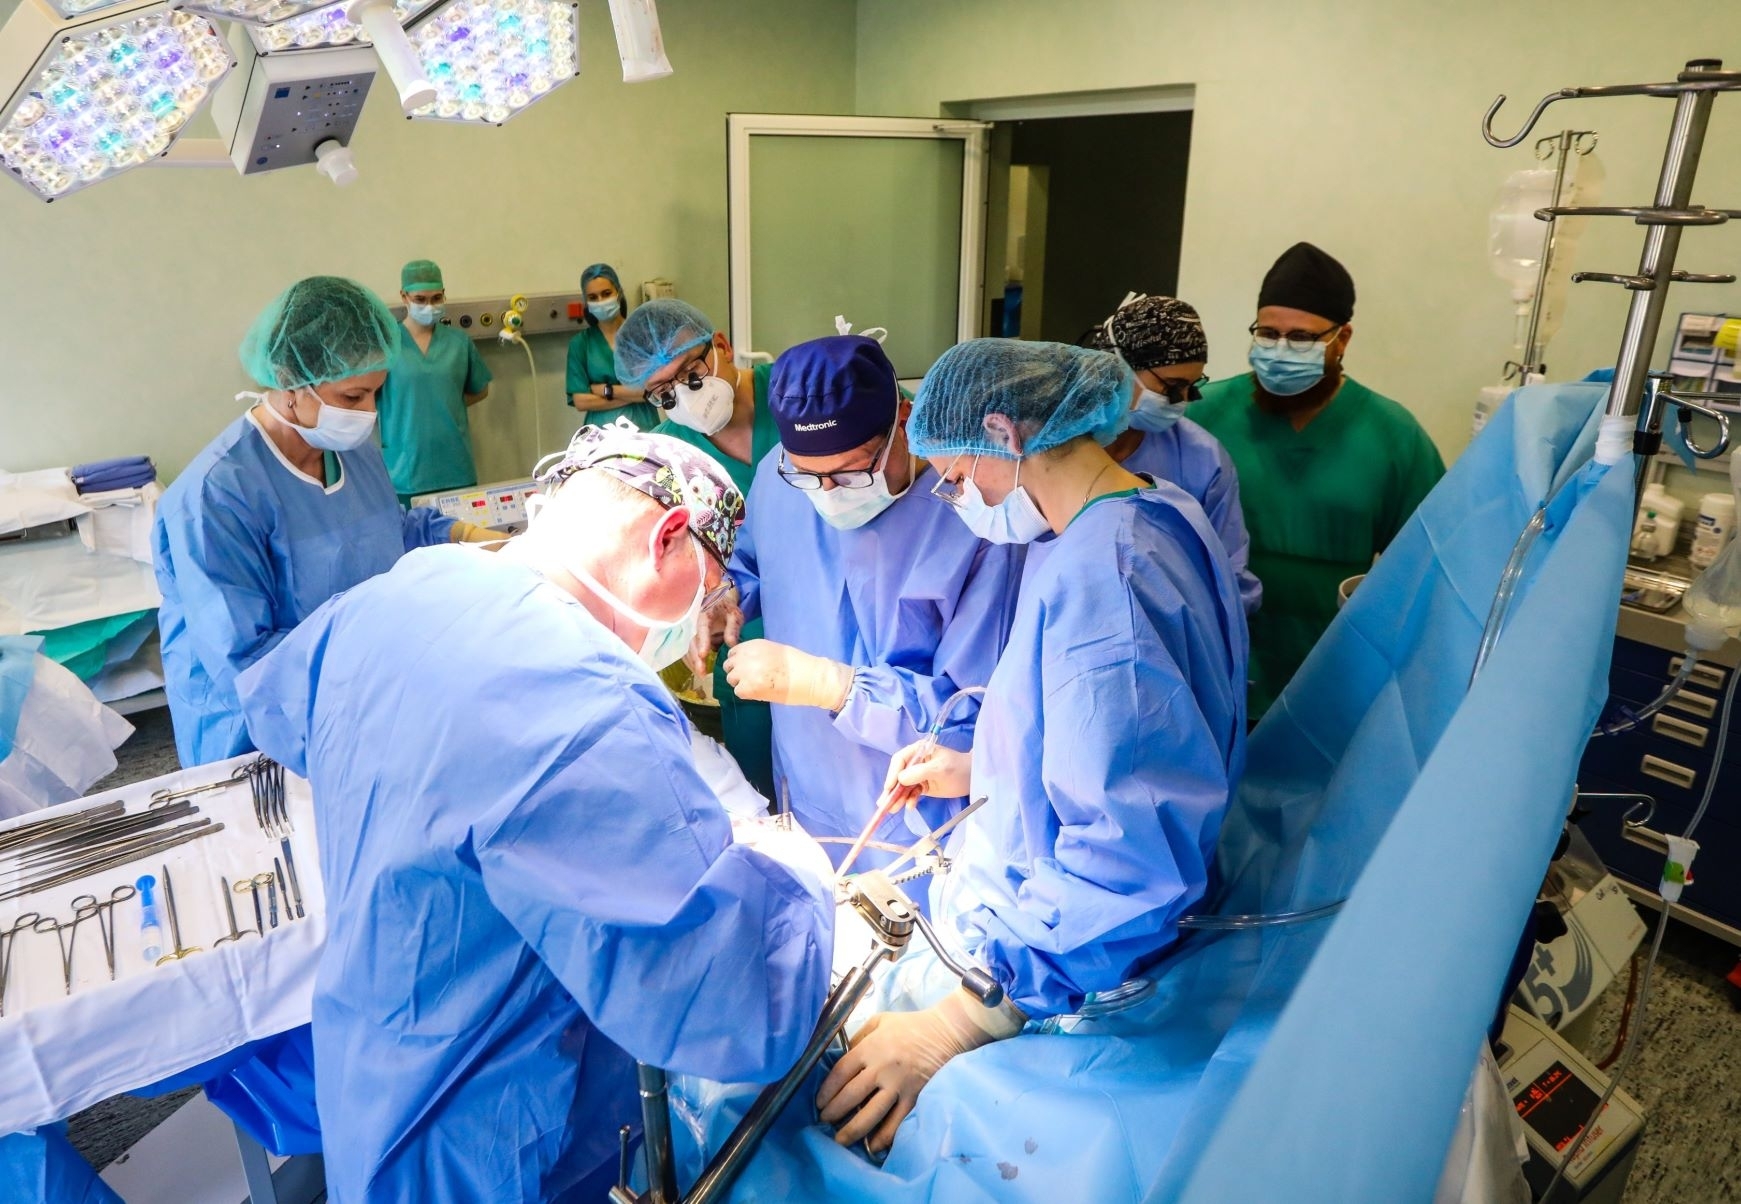 Sėkmingi organų transplantacijos metai šimtams žmonių dovanojo viltį